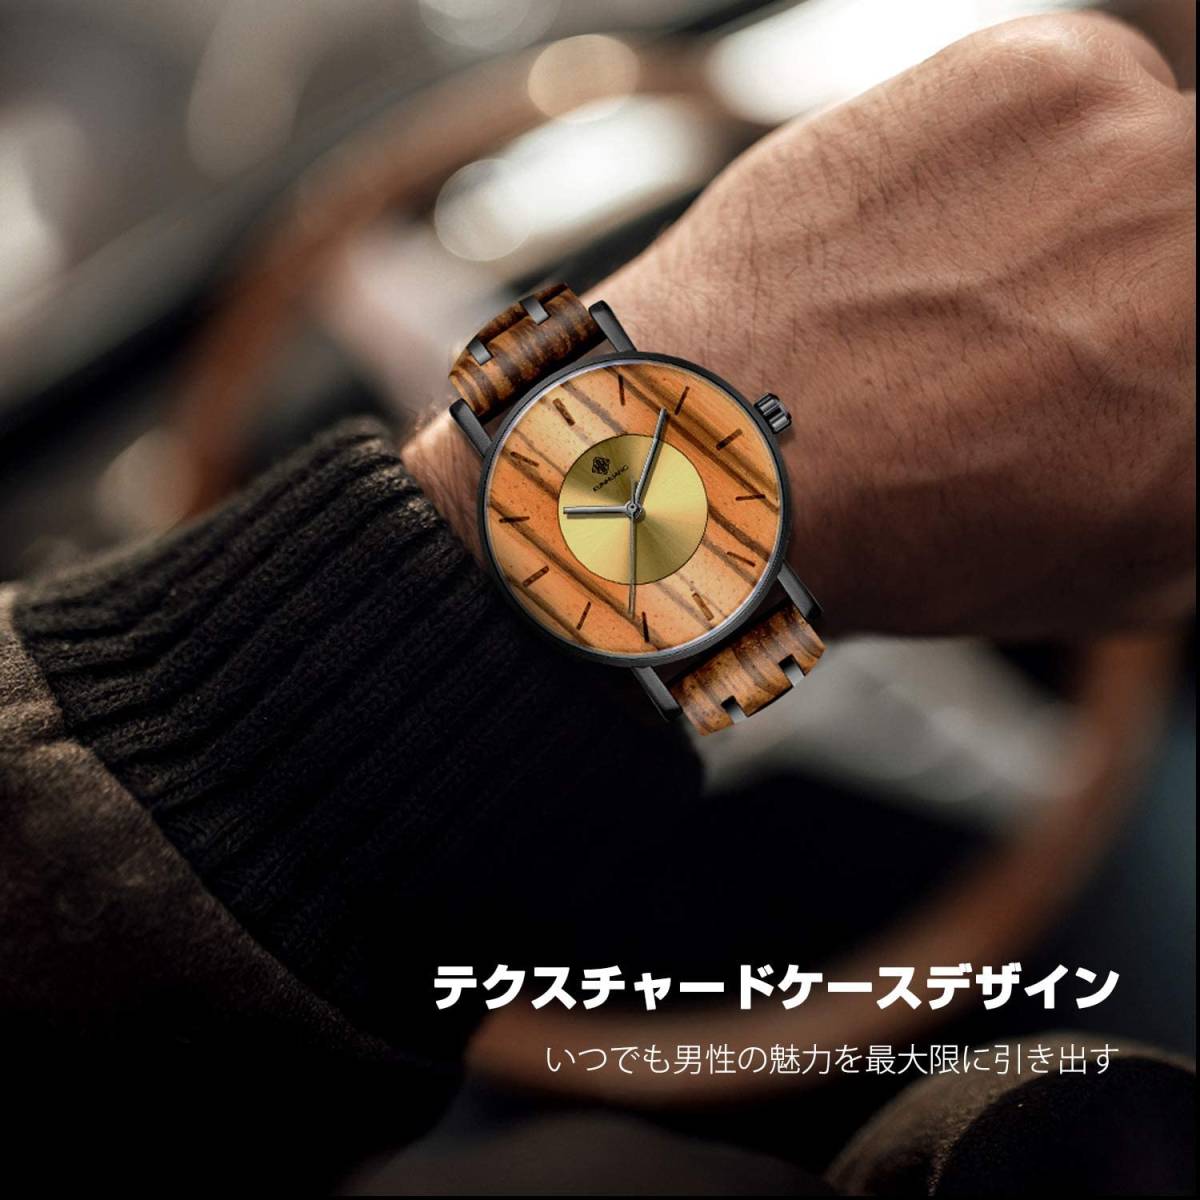 高品質な 木製腕時計 イエロー 日本製 クオーツ メンズ 天然木 木製 ウォッチ カジュアル ウッド オシャレ モダン 男性 腕時計 プレゼント